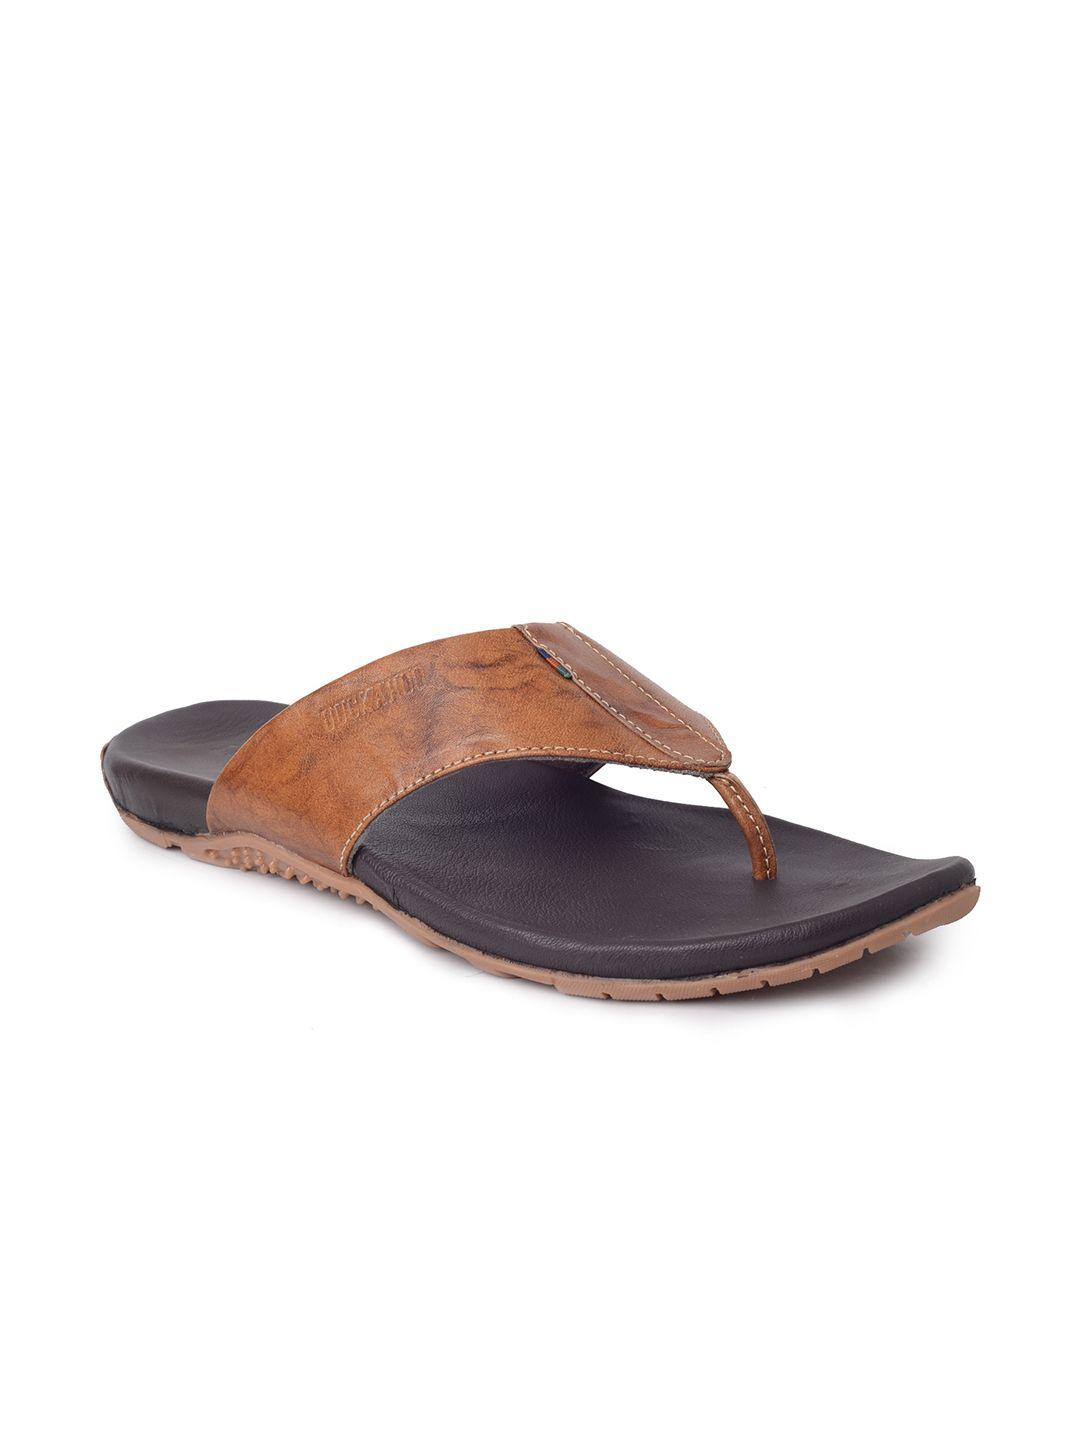 buckaroo men leather slip-on comfort sandals